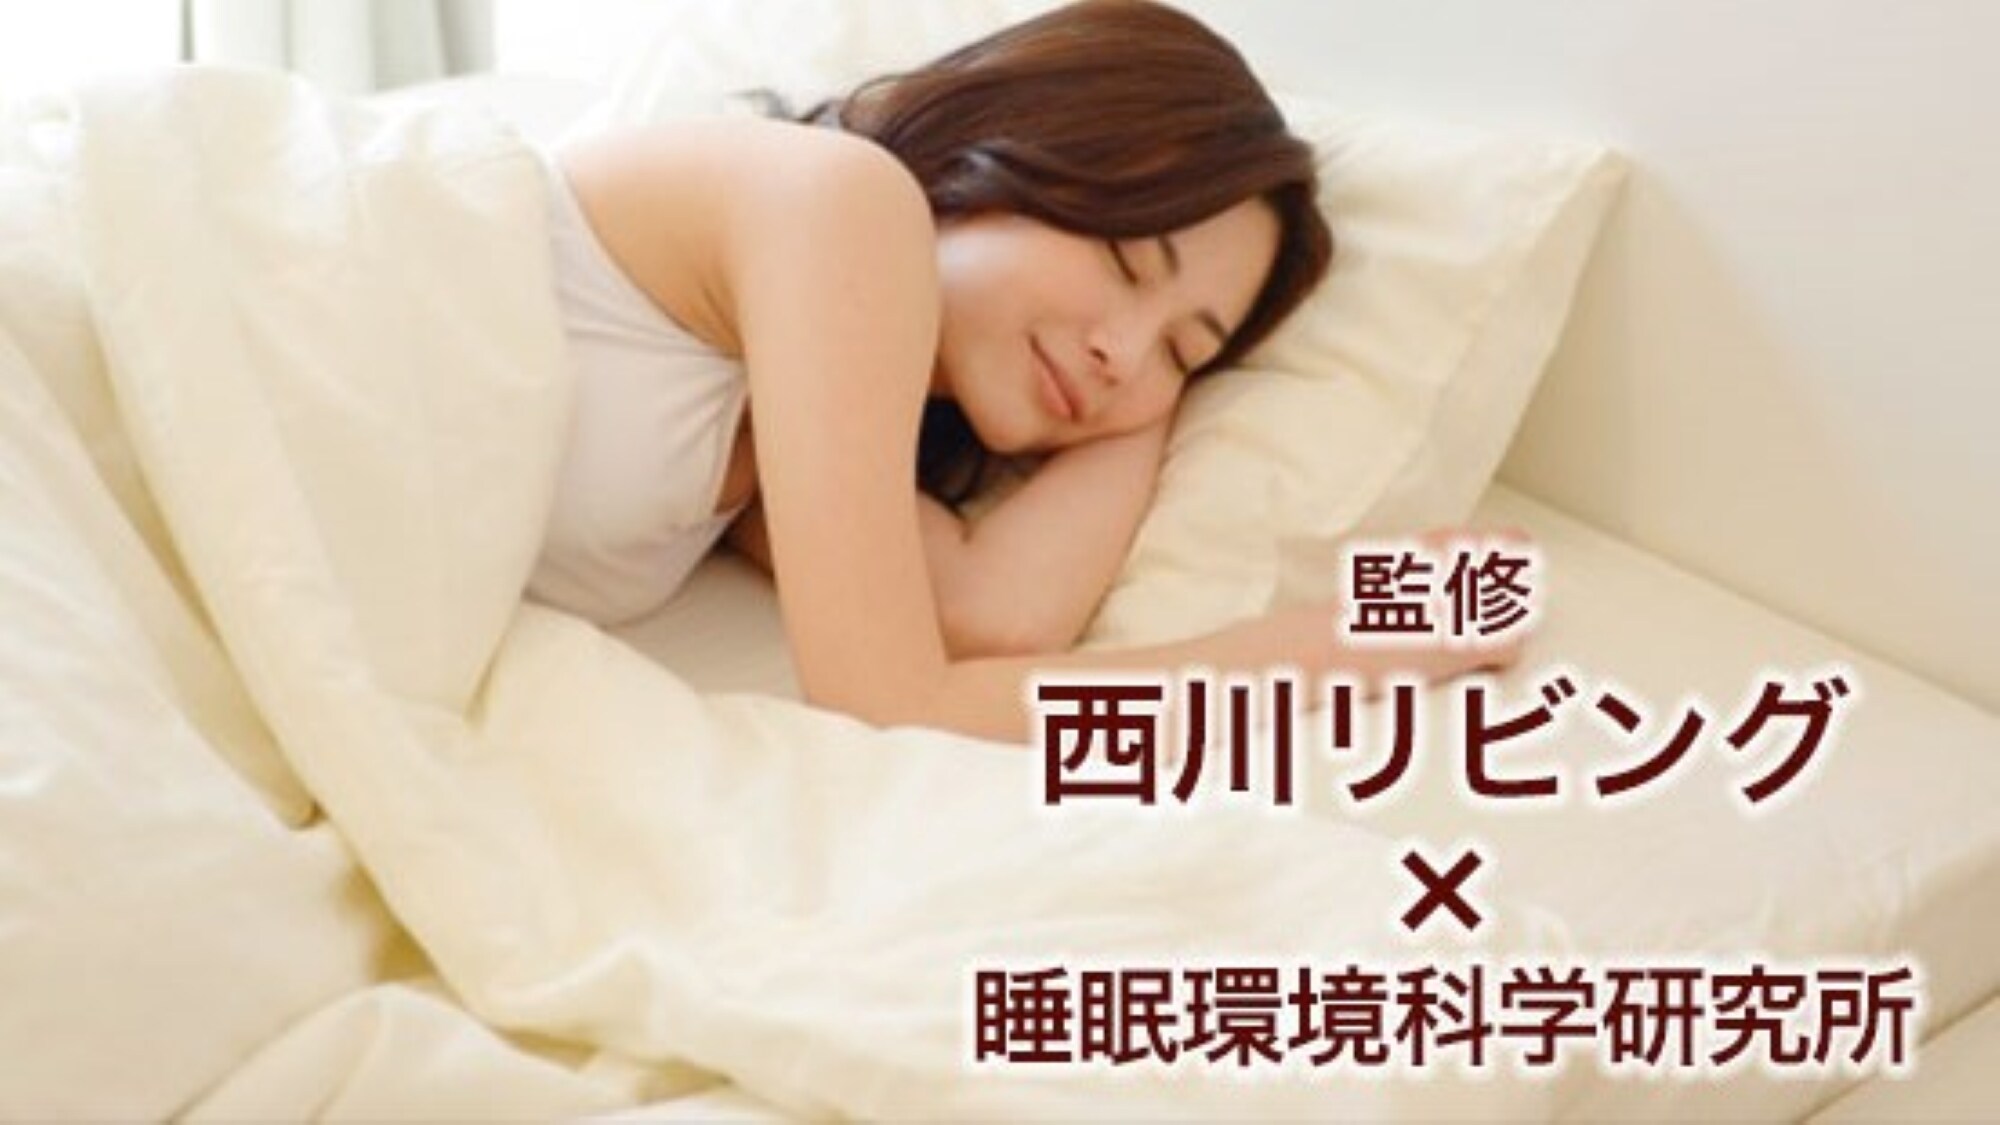 Nishikawa Living / Original mattress